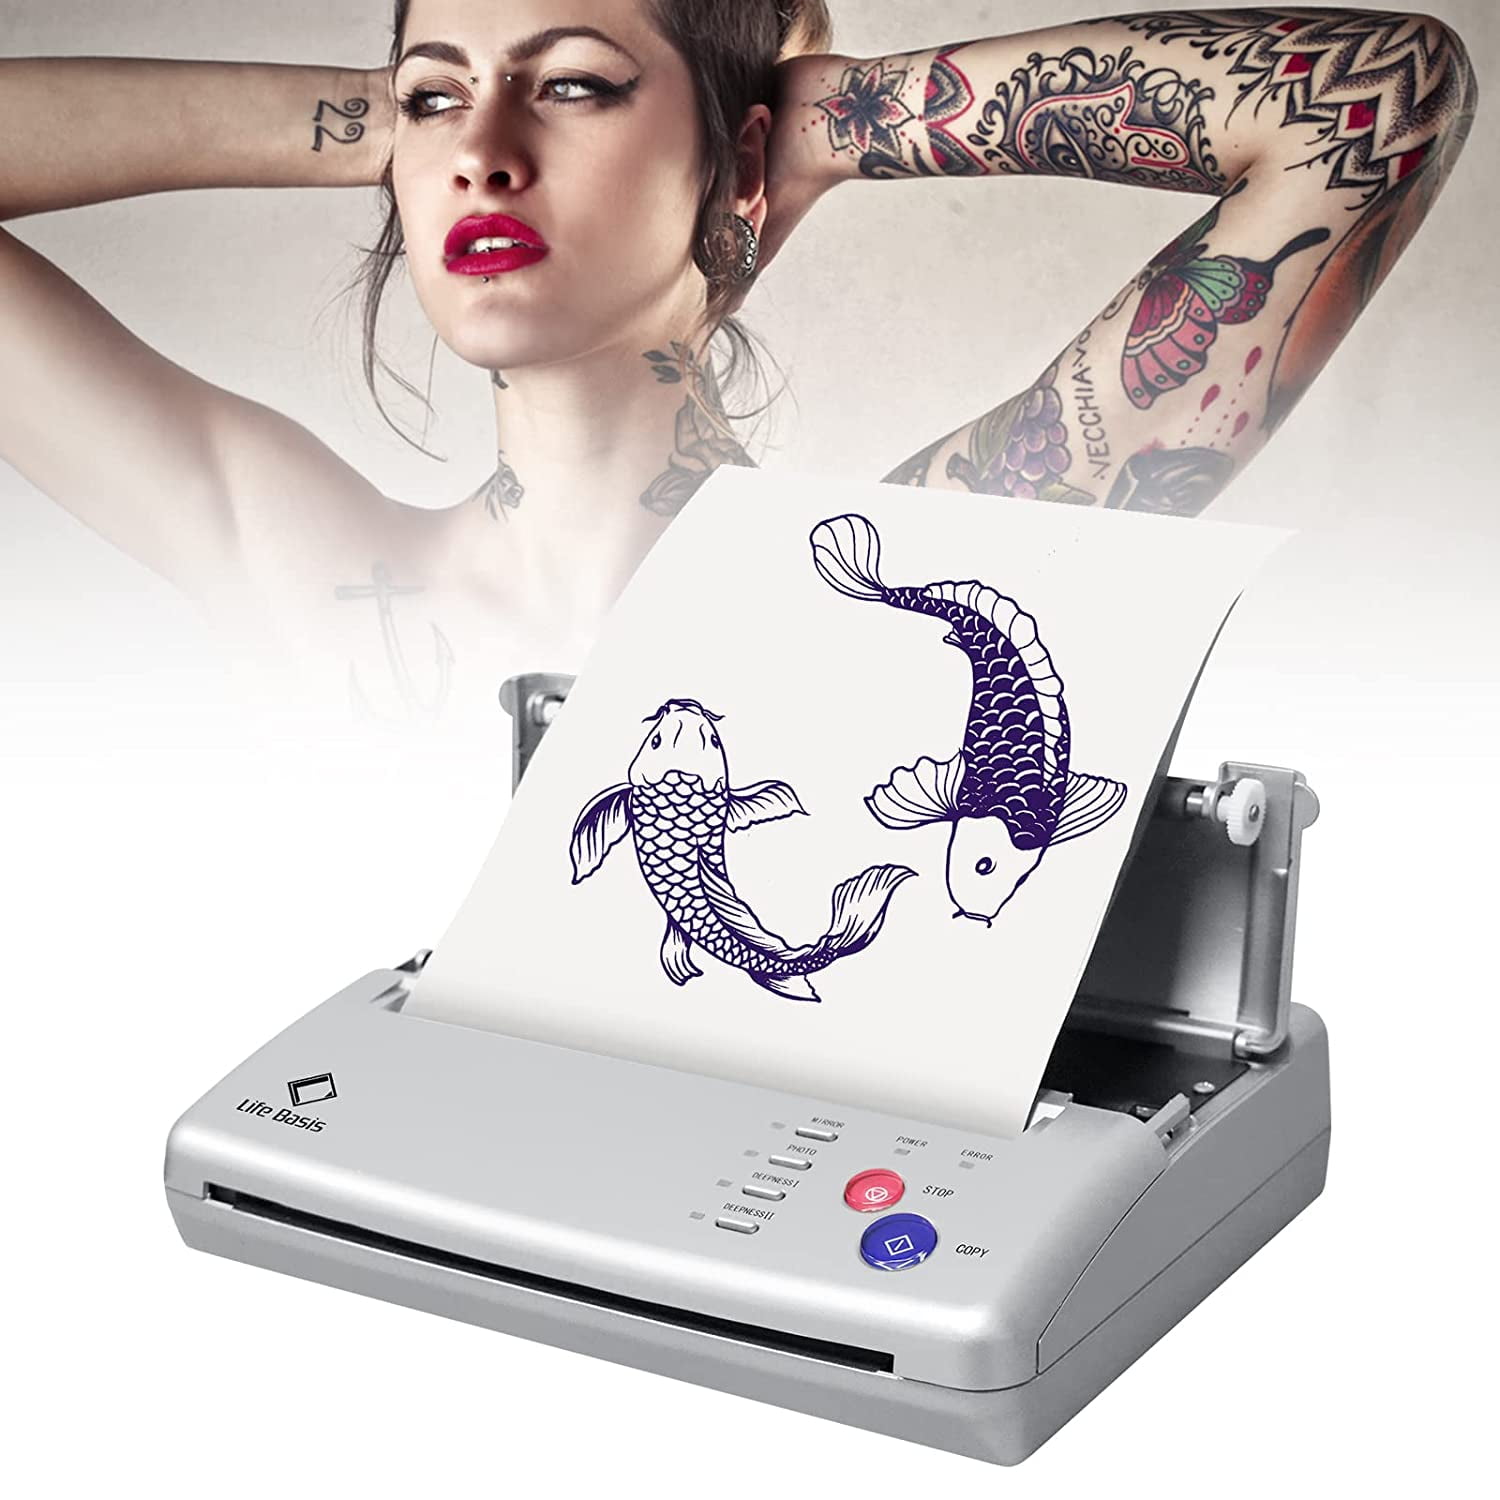 Professional Tattoo Stencil Maker Transfer Machine Flash Thermal